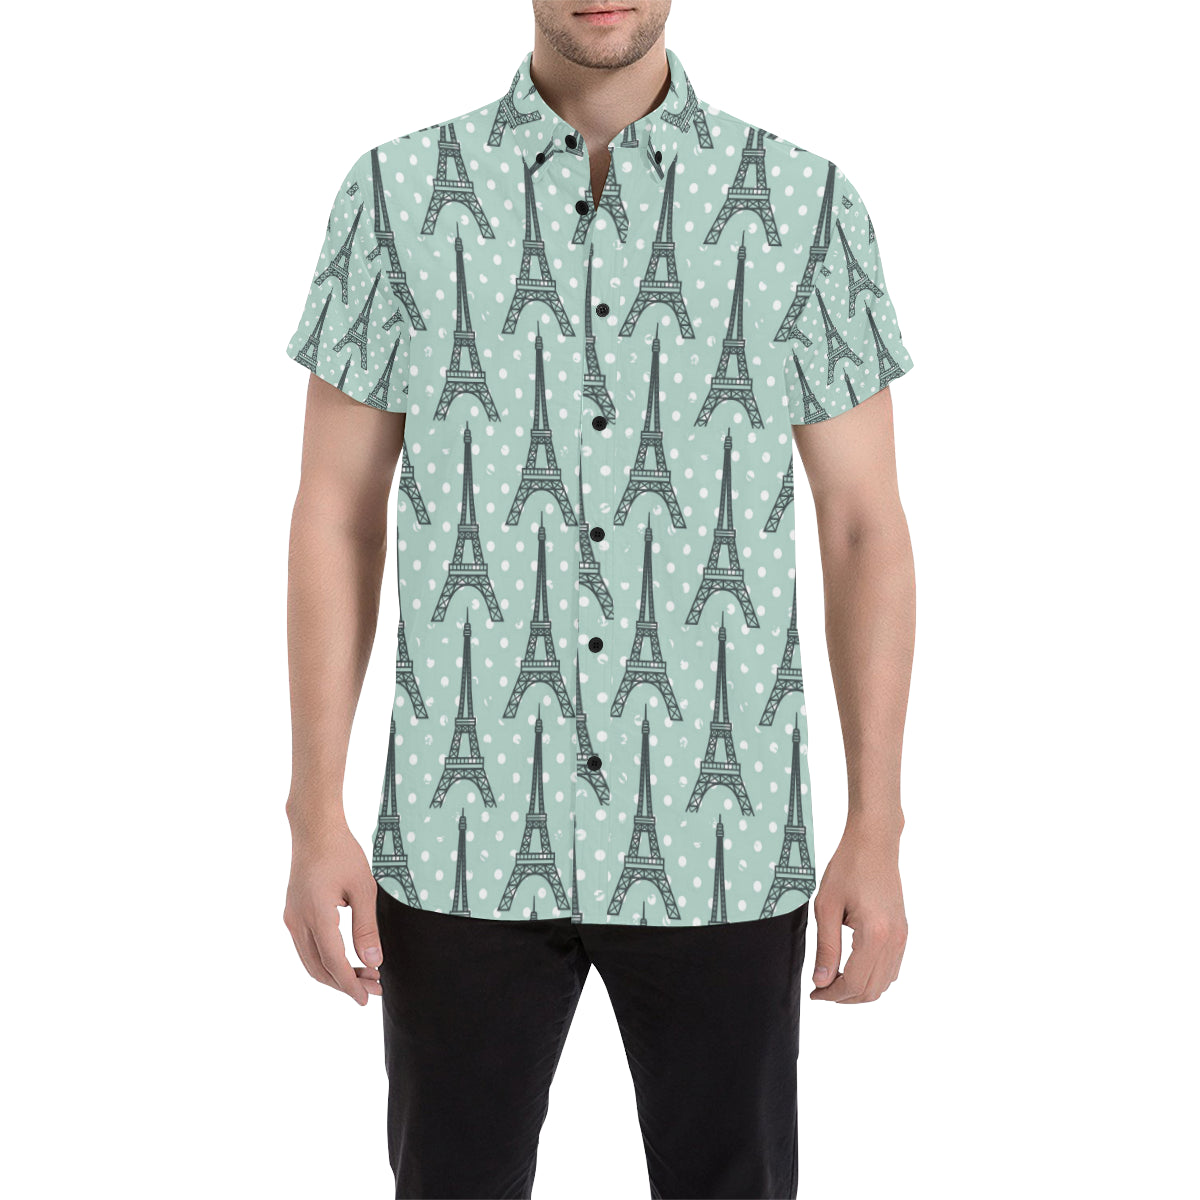 Eiffel Tower Polka Dot Print Men's Short Sleeve Button Up Shirt